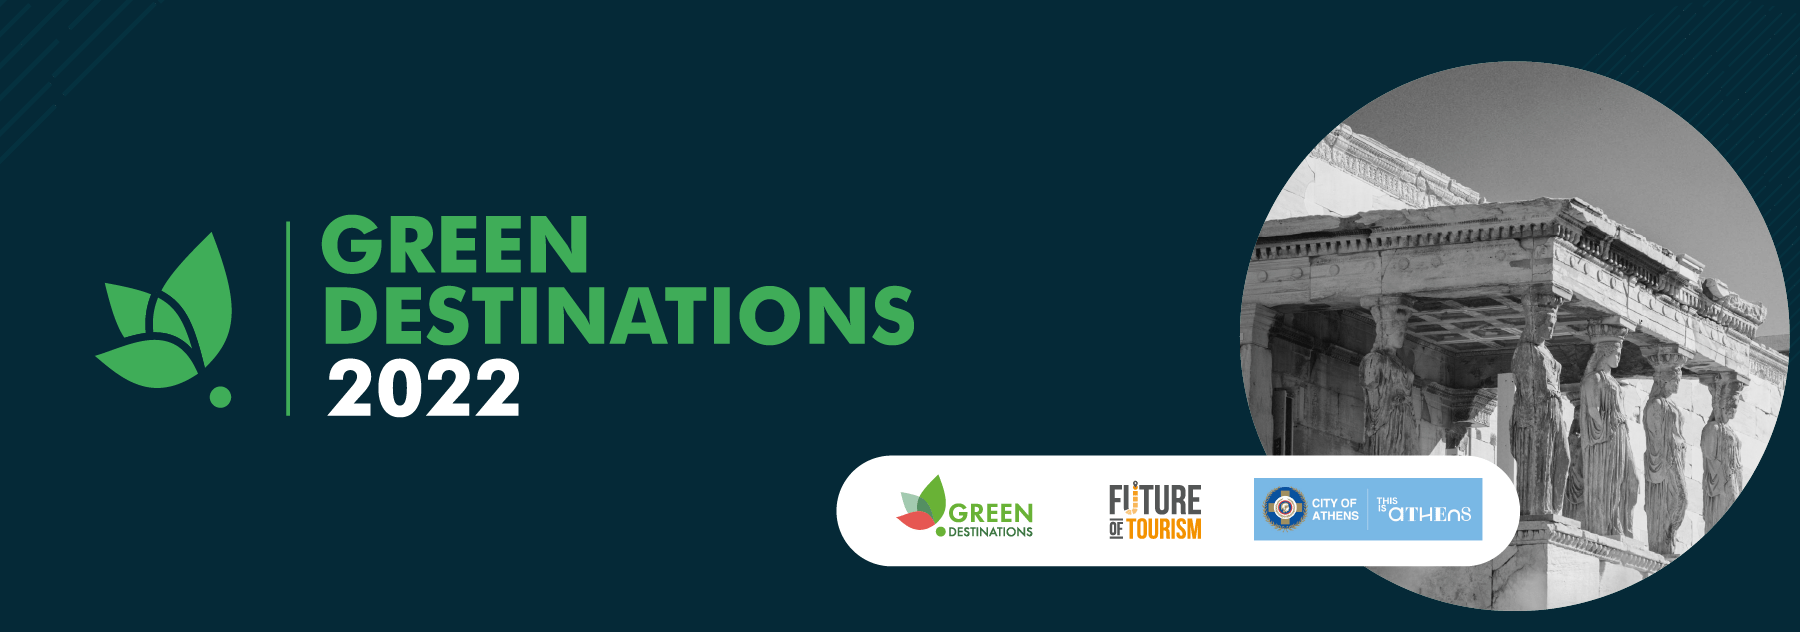 Banner - Green Destinations 2022